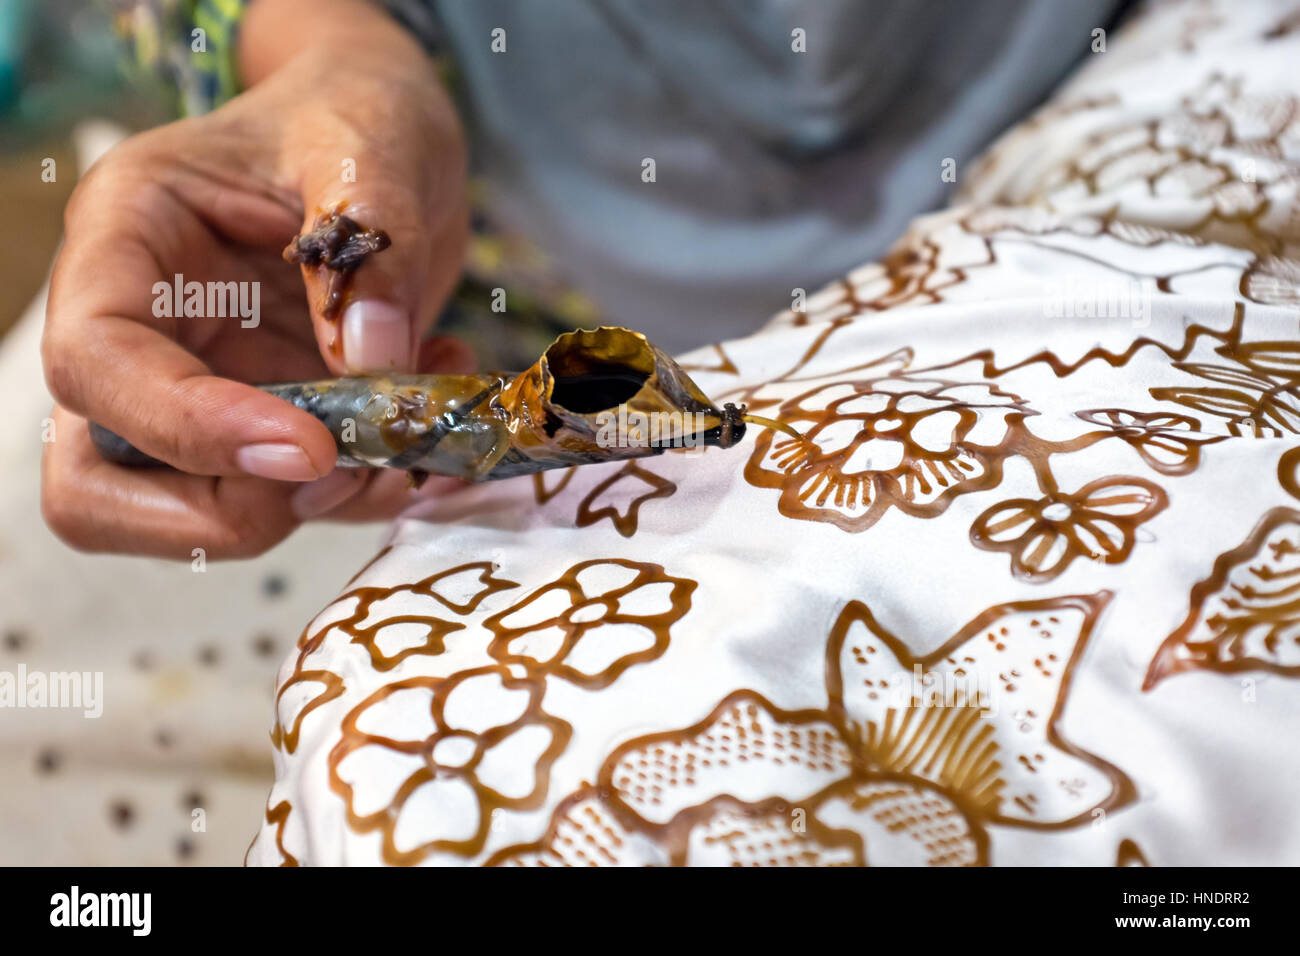 Peinture Aquarelle sur le tissu pour faire de batik. De Batik fait partie de la culture indonésienne Banque D'Images